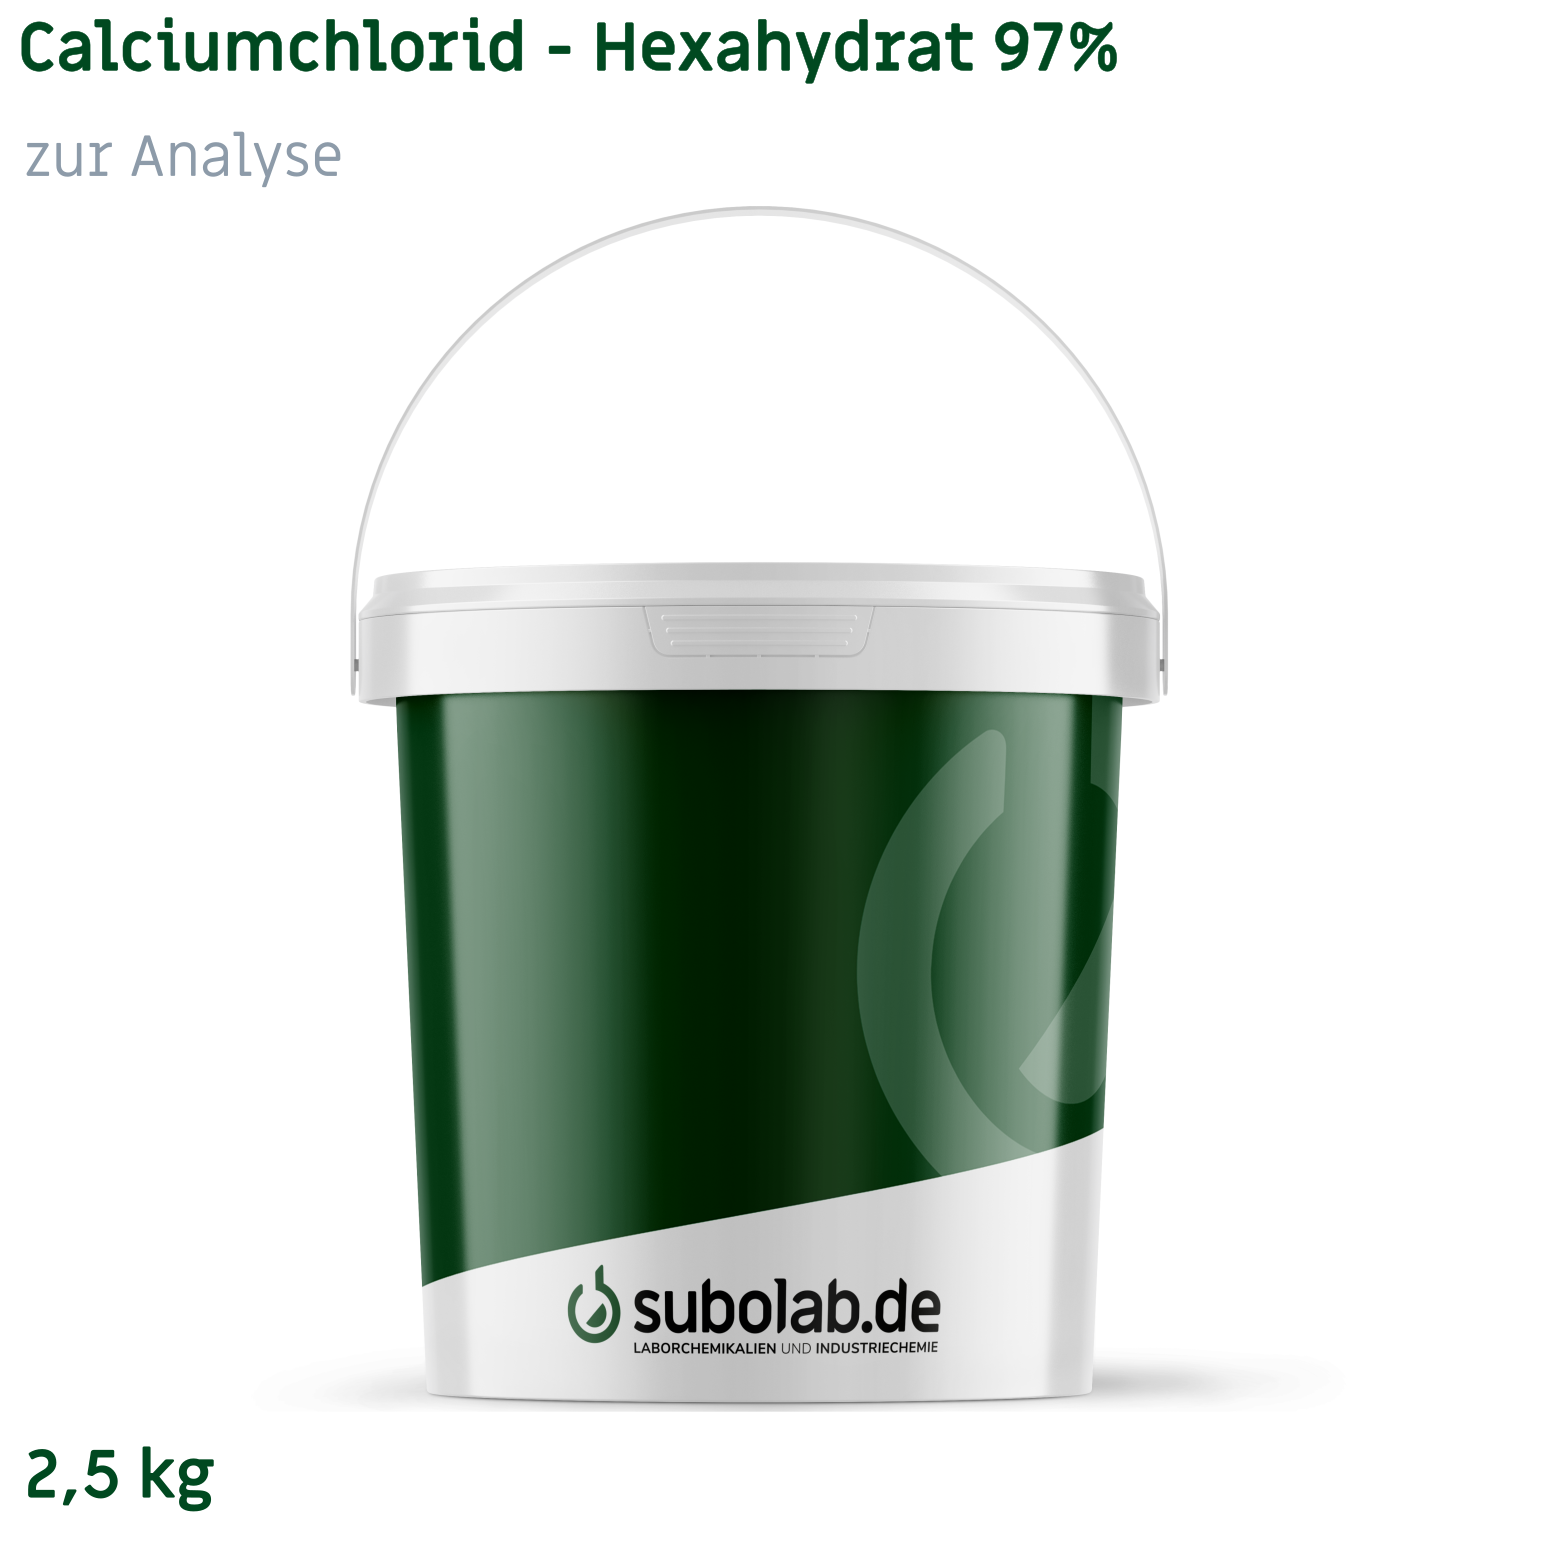 Bild von Calciumchlorid - Hexahydrat 97% zur Analyse (2,5 kg)